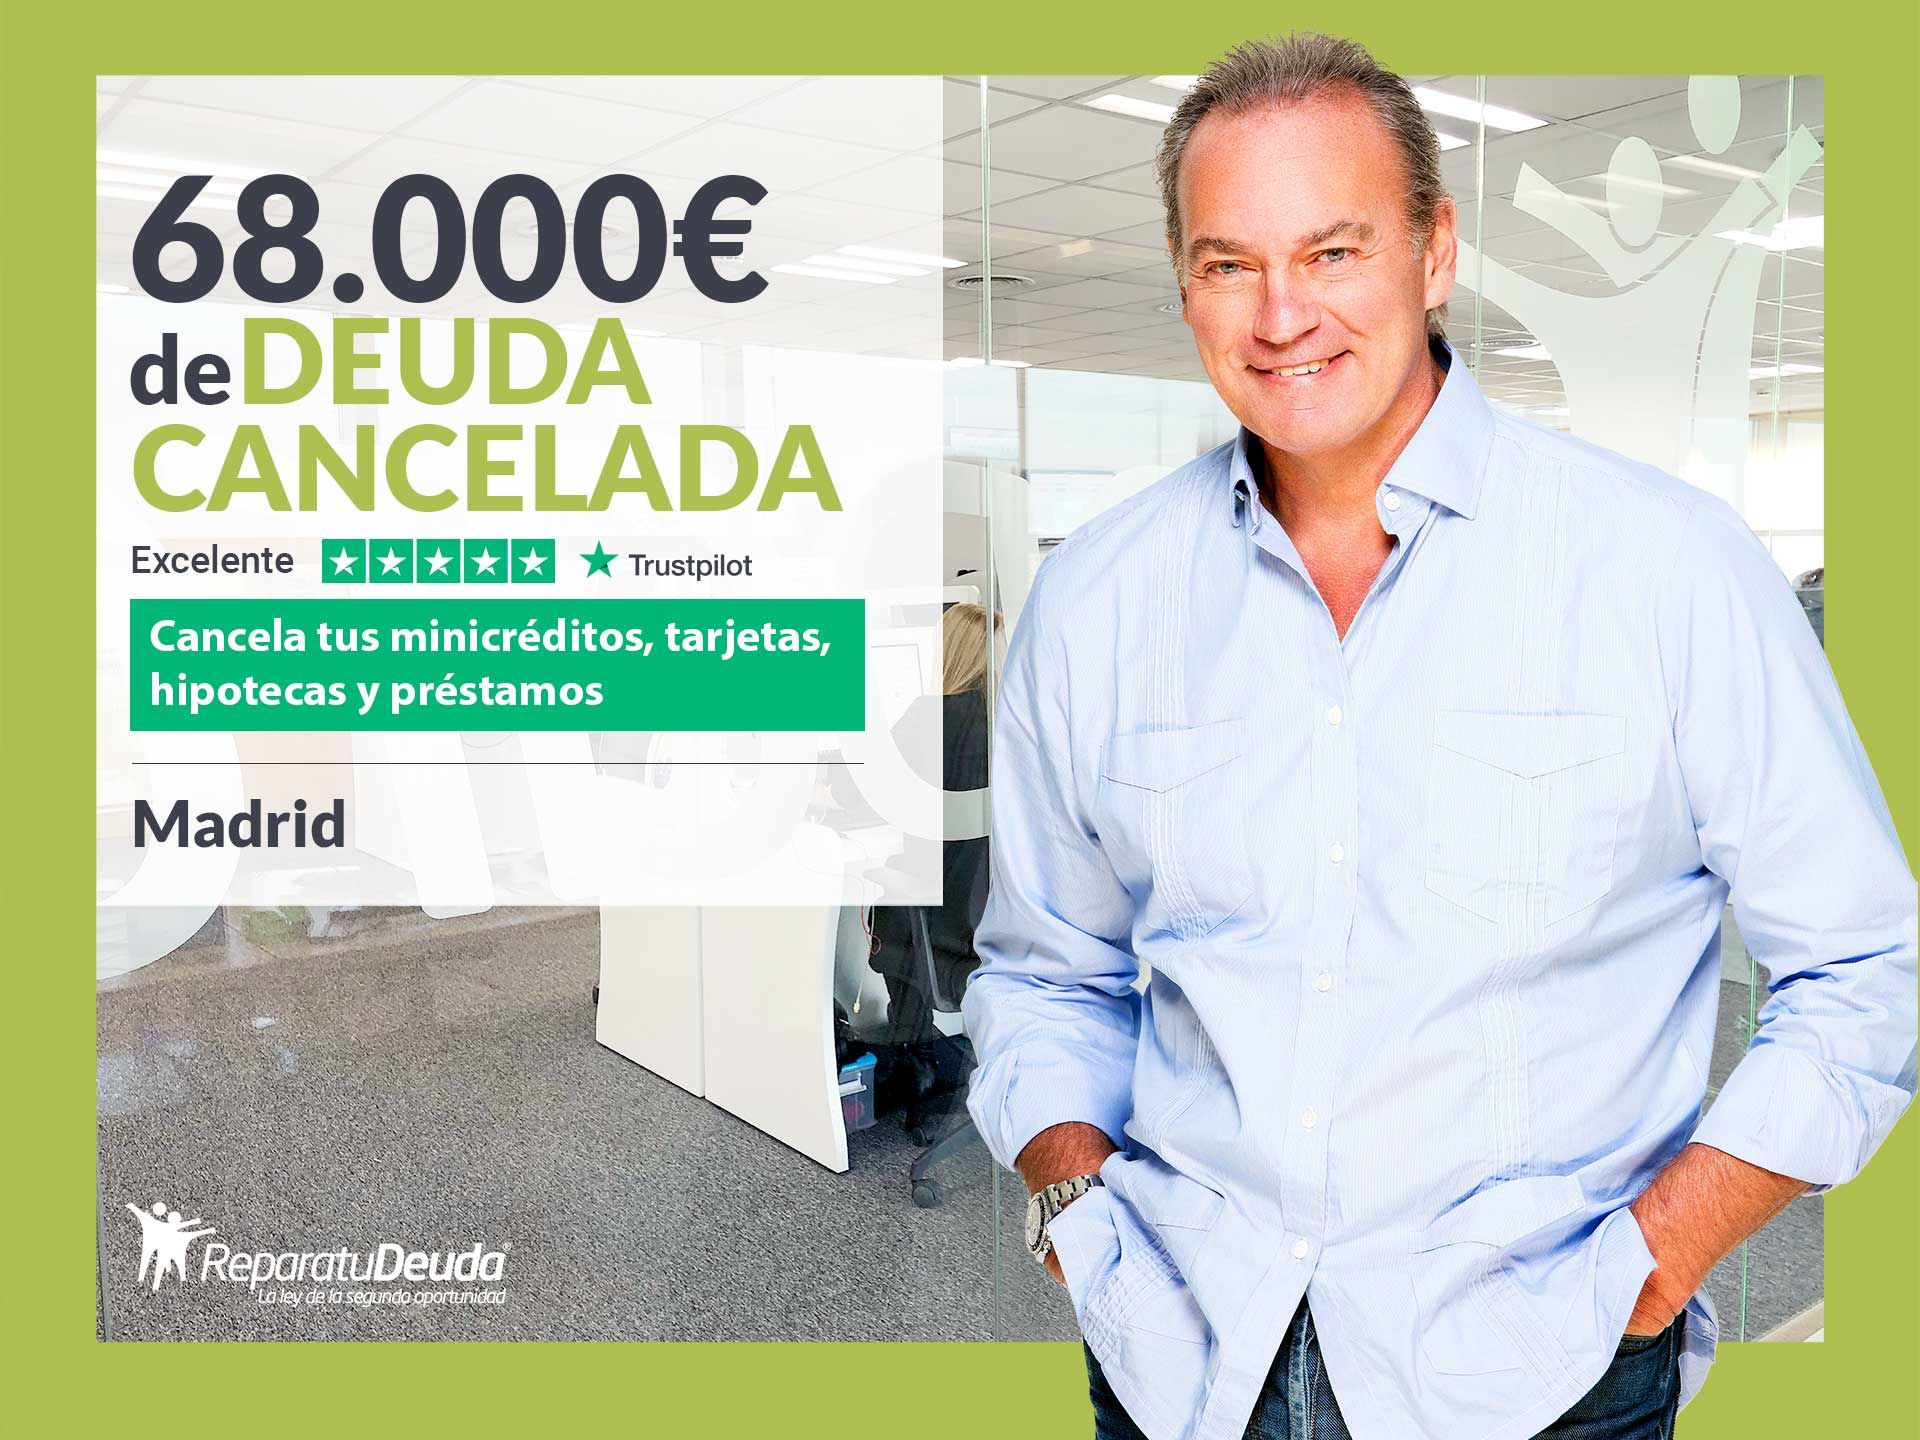 Repara tu Deuda Abogados cancela 68.000? en Madrid por la Ley de Segunda Oportunidad